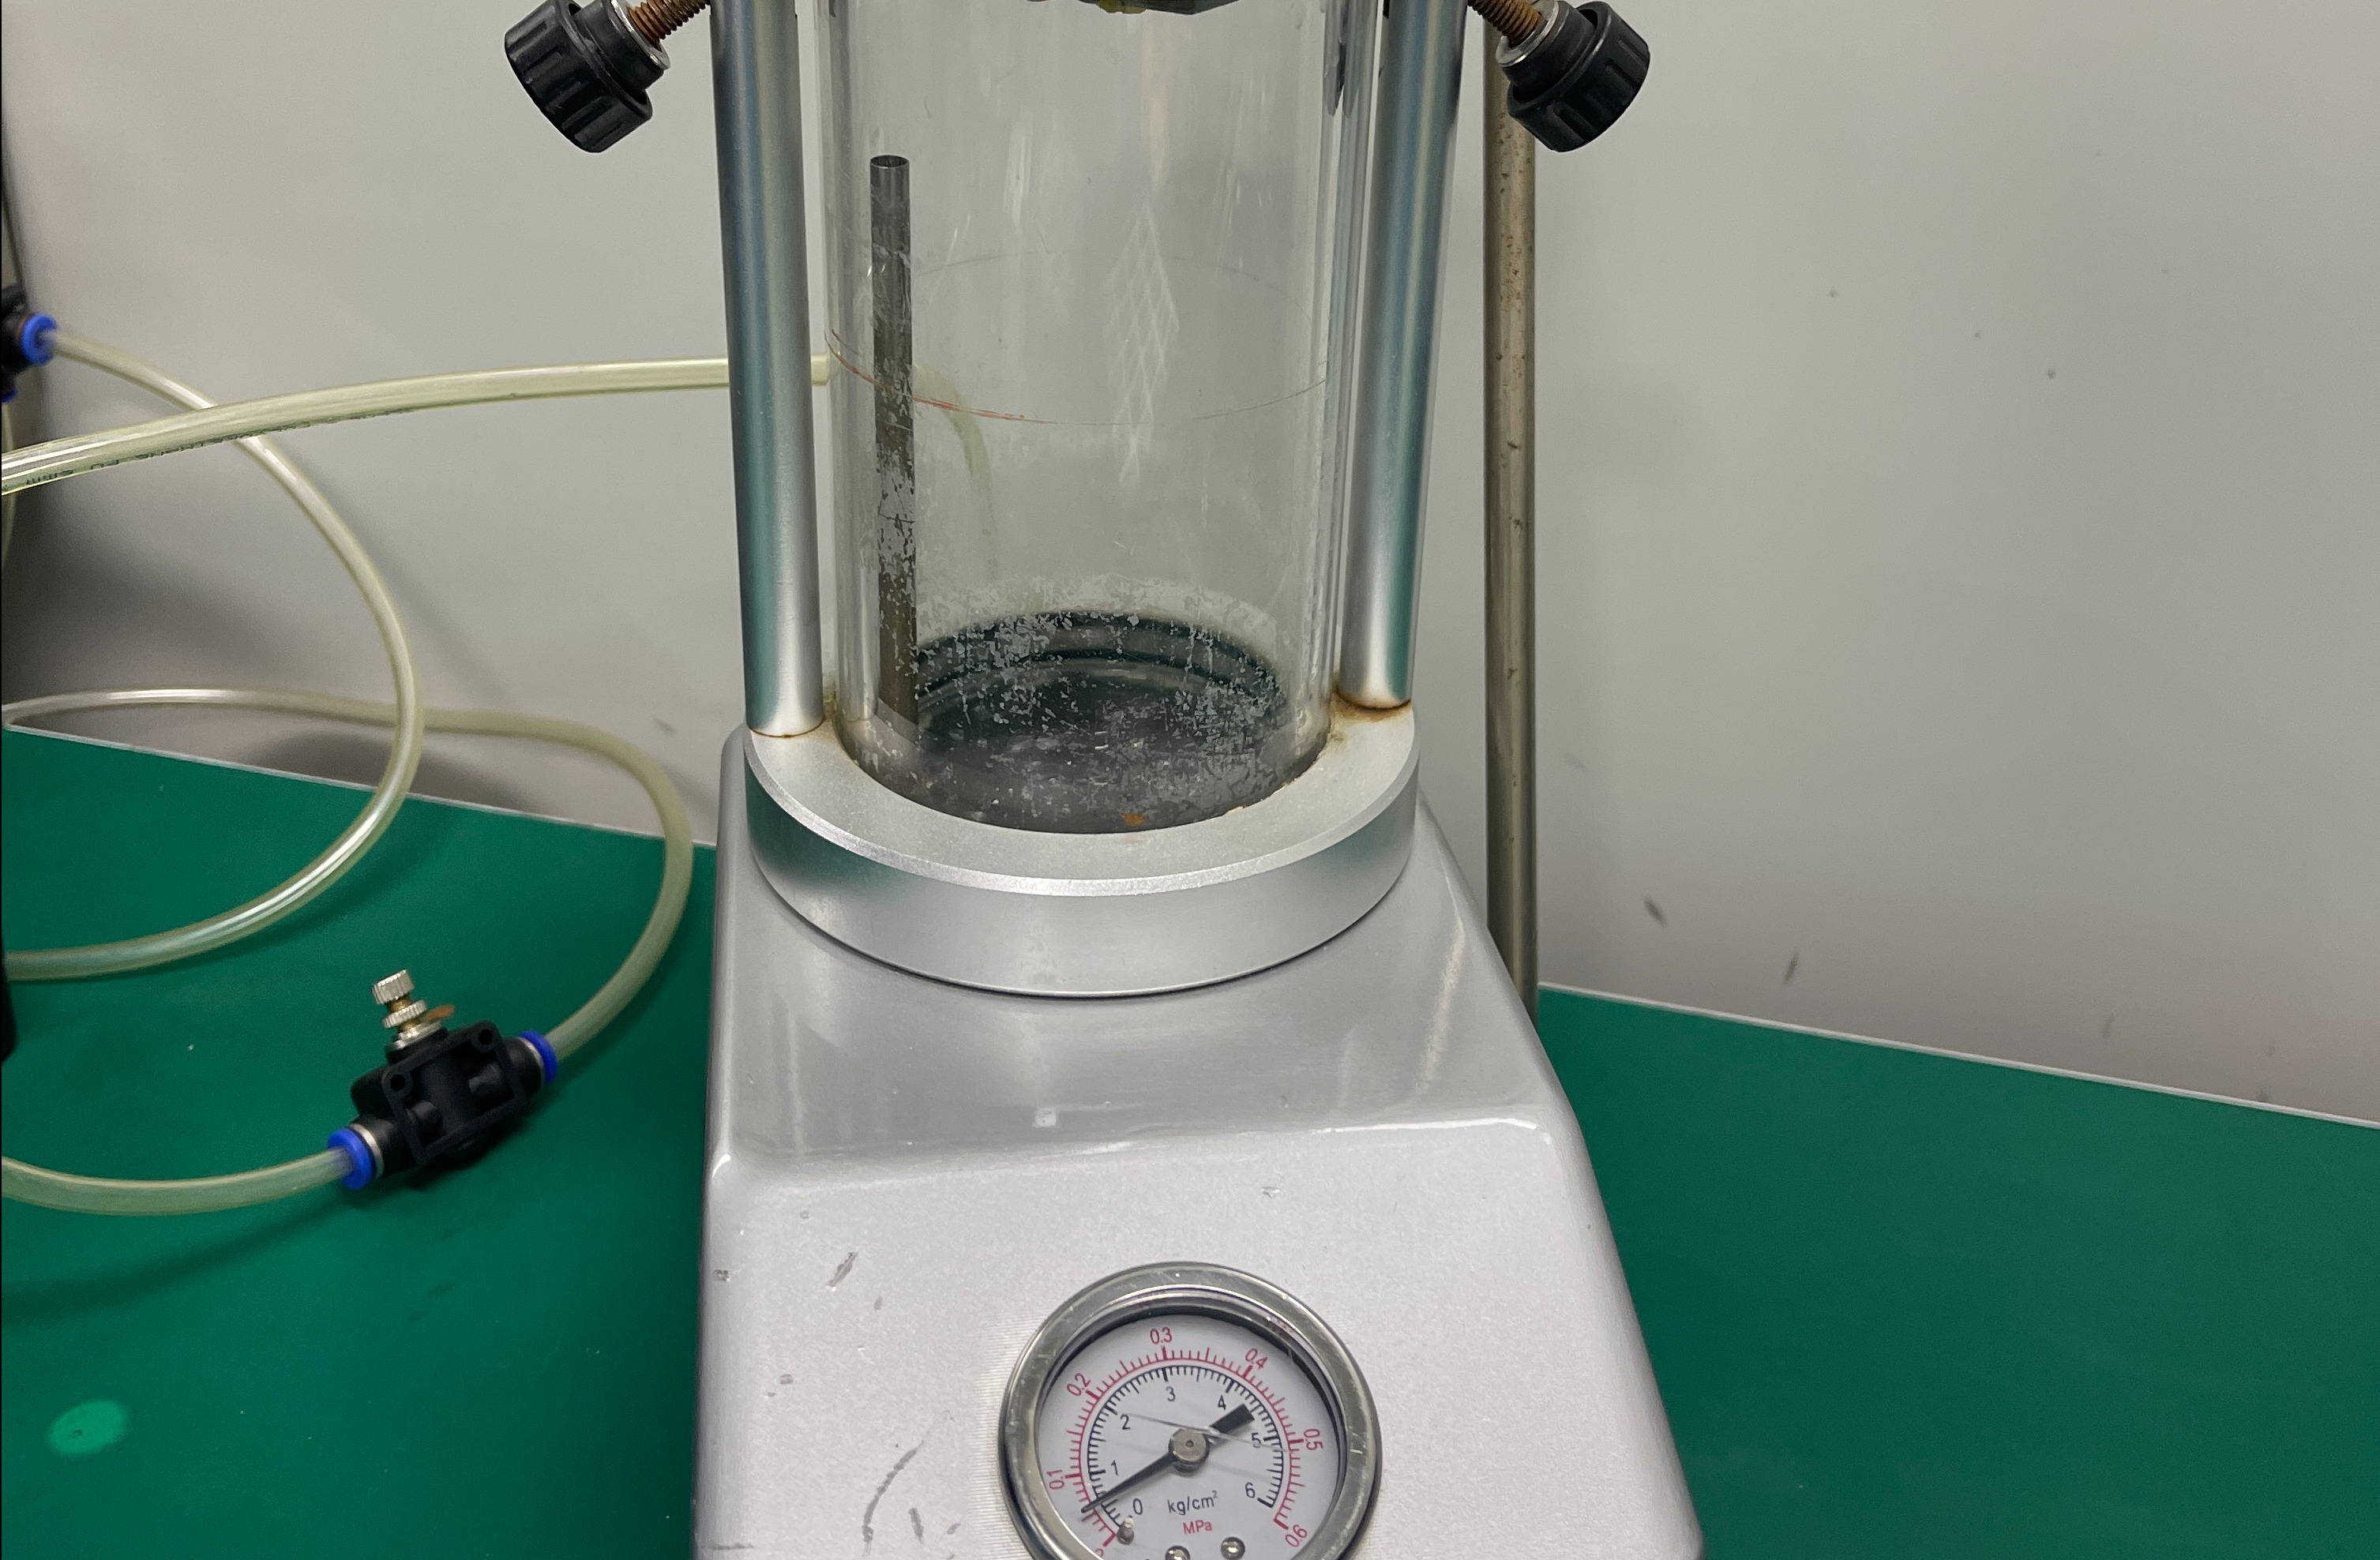 Our pressure waterproof testing machine